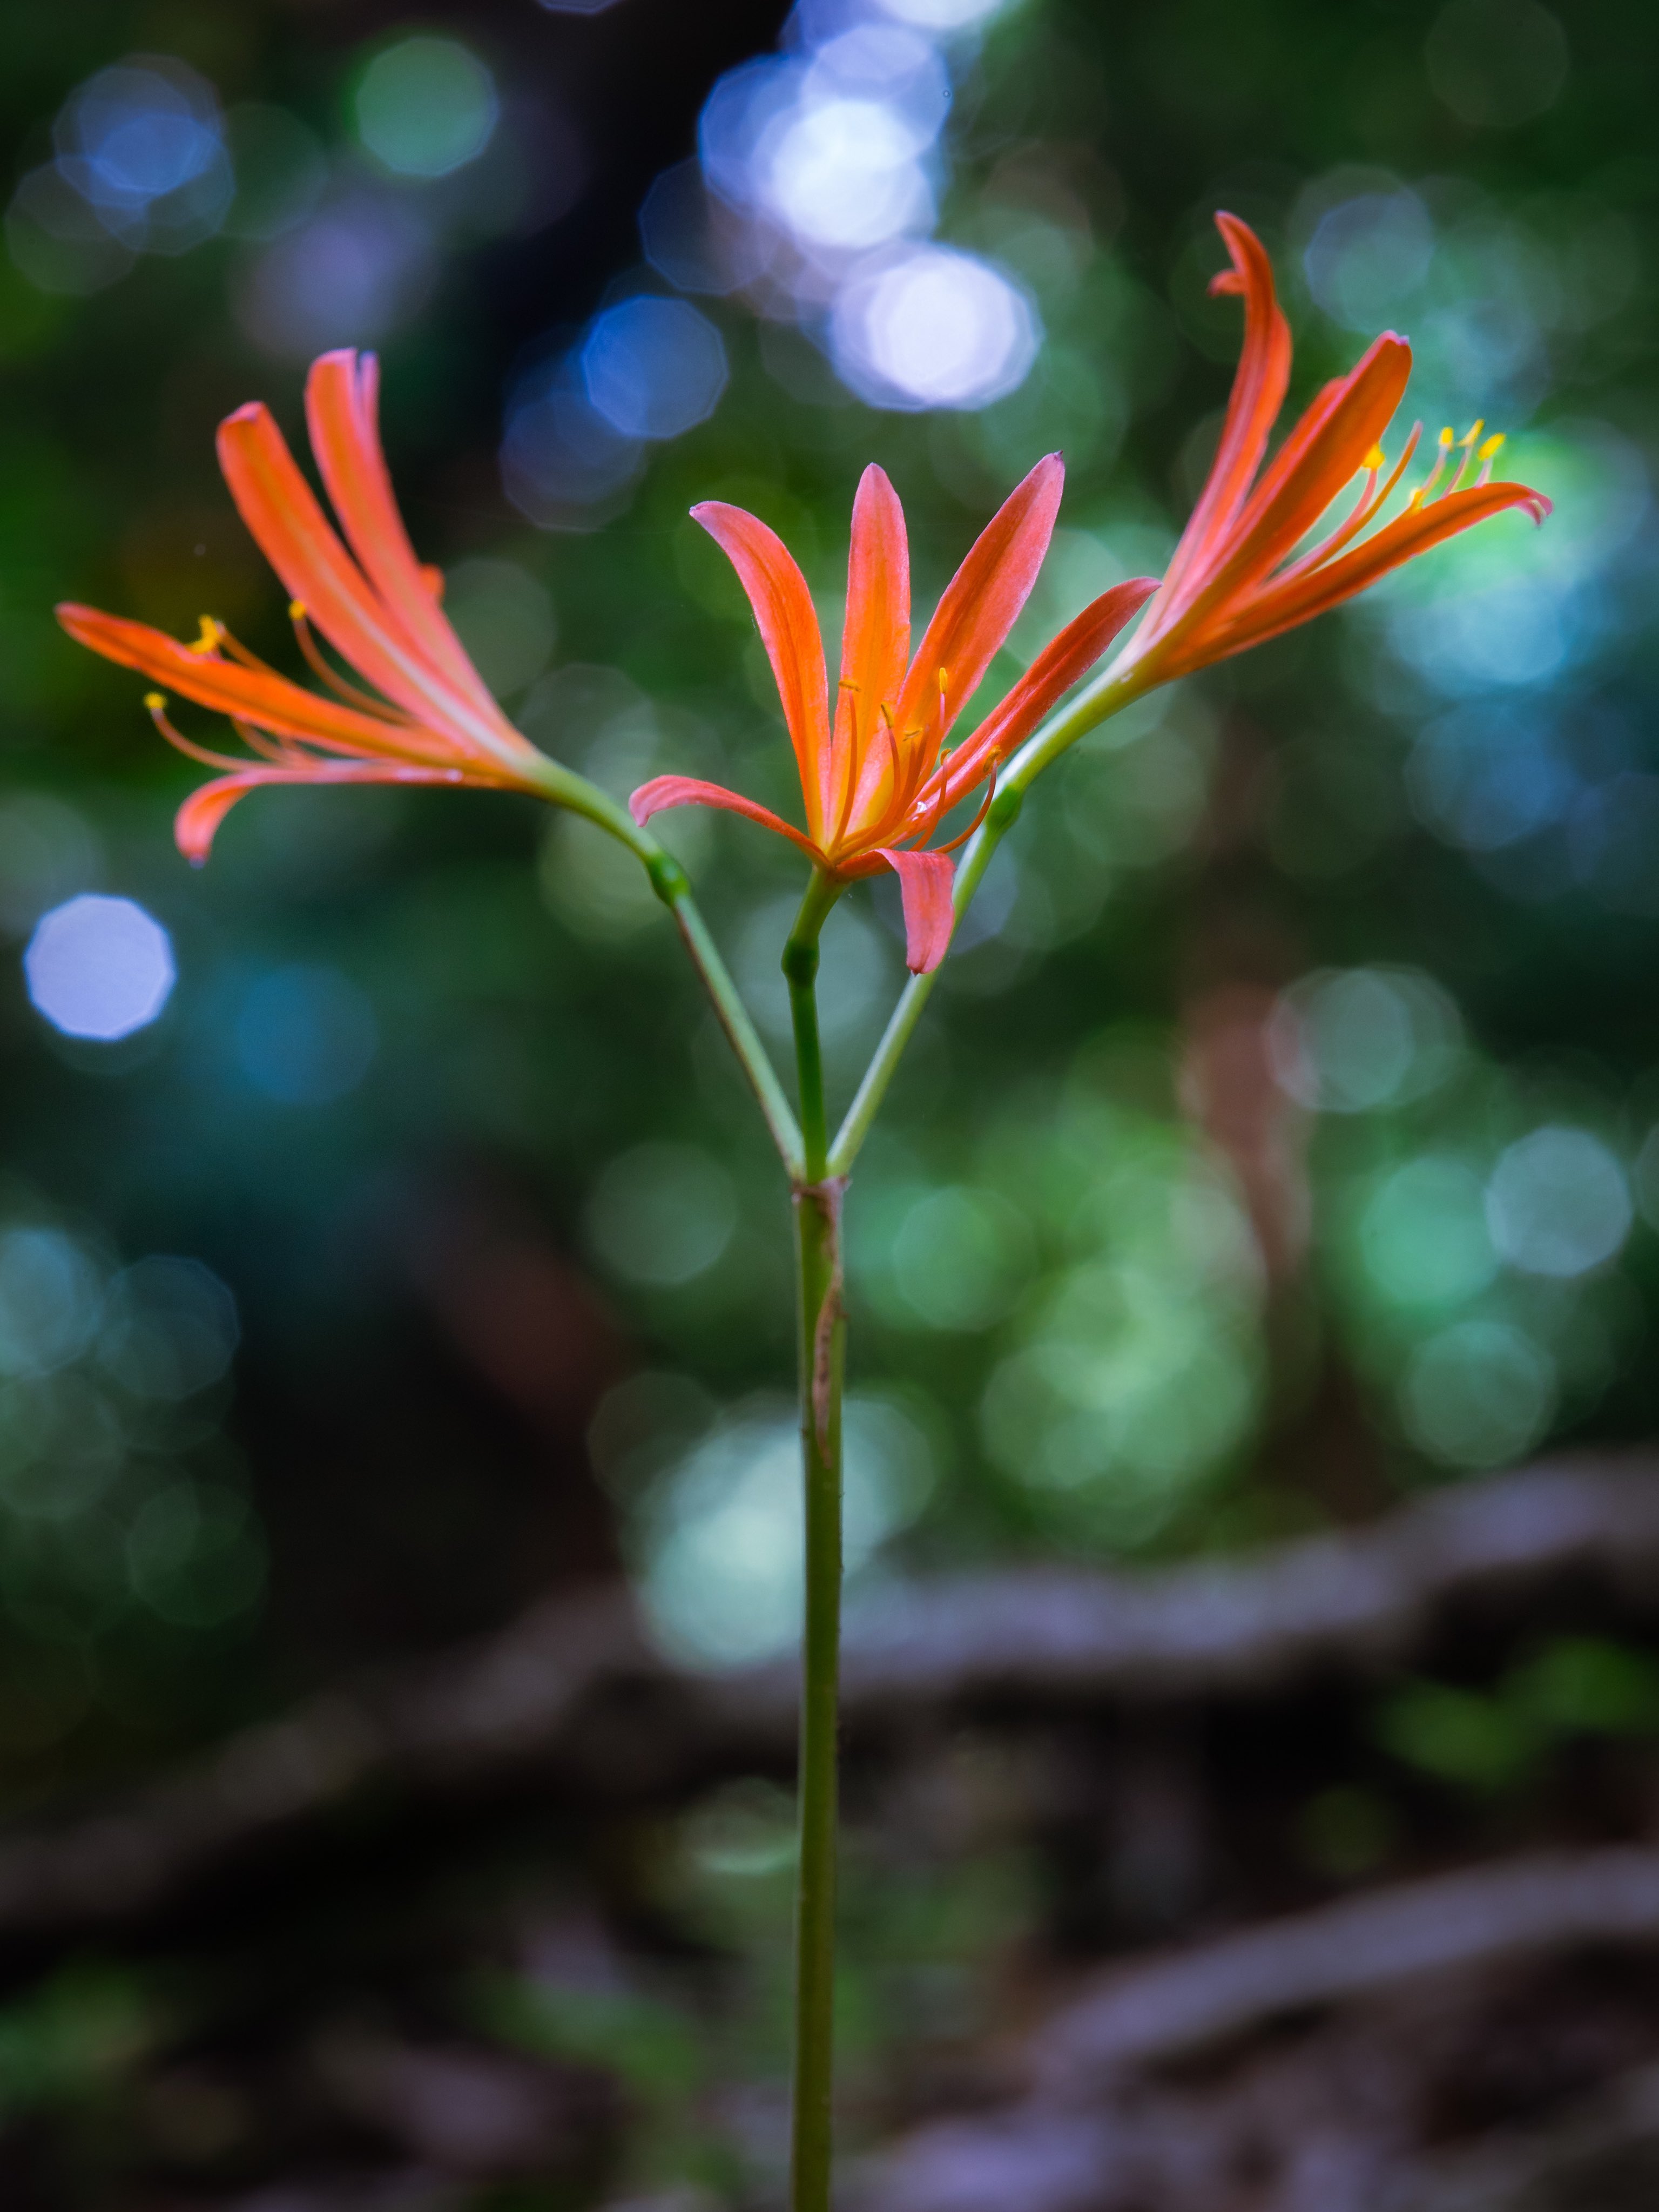 Takao キツネノカミソリ キツネノカミソリが咲いていました 本州 九州に分布 ヒガンバナ科 春に地面から葉を伸ばしますが夏前までに葉を落として姿を消します そして夏になると何もない地面から花茎を出して 花を咲かせたかと思うとまた地上から消えて